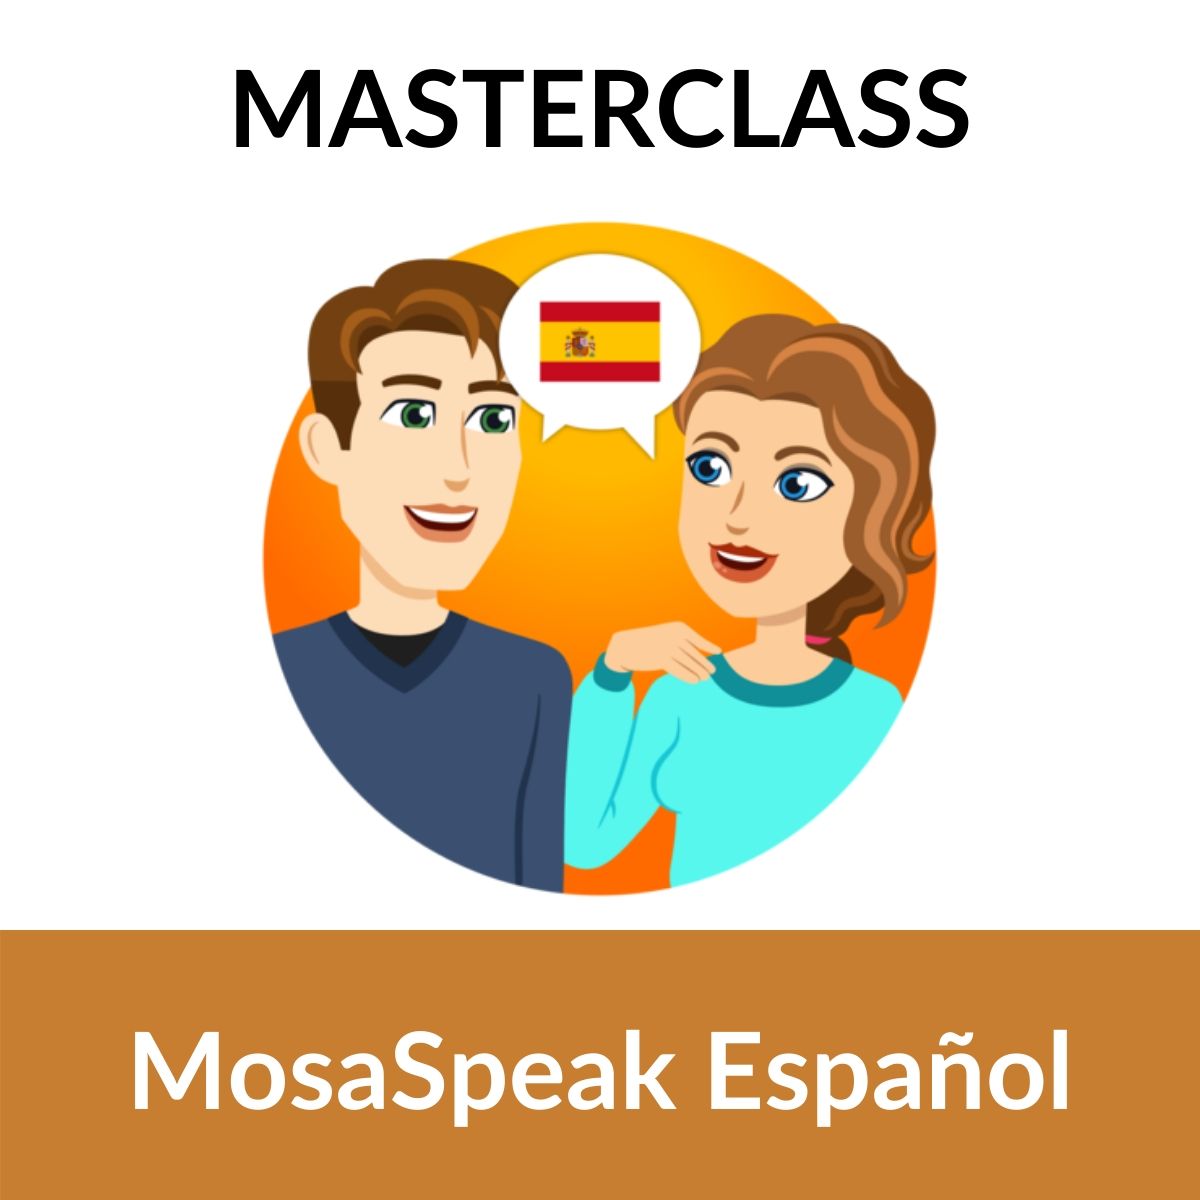 i-vari-accenti-in-spagnolo-come-scegliere-quello-giusto-per-te-mosalingua